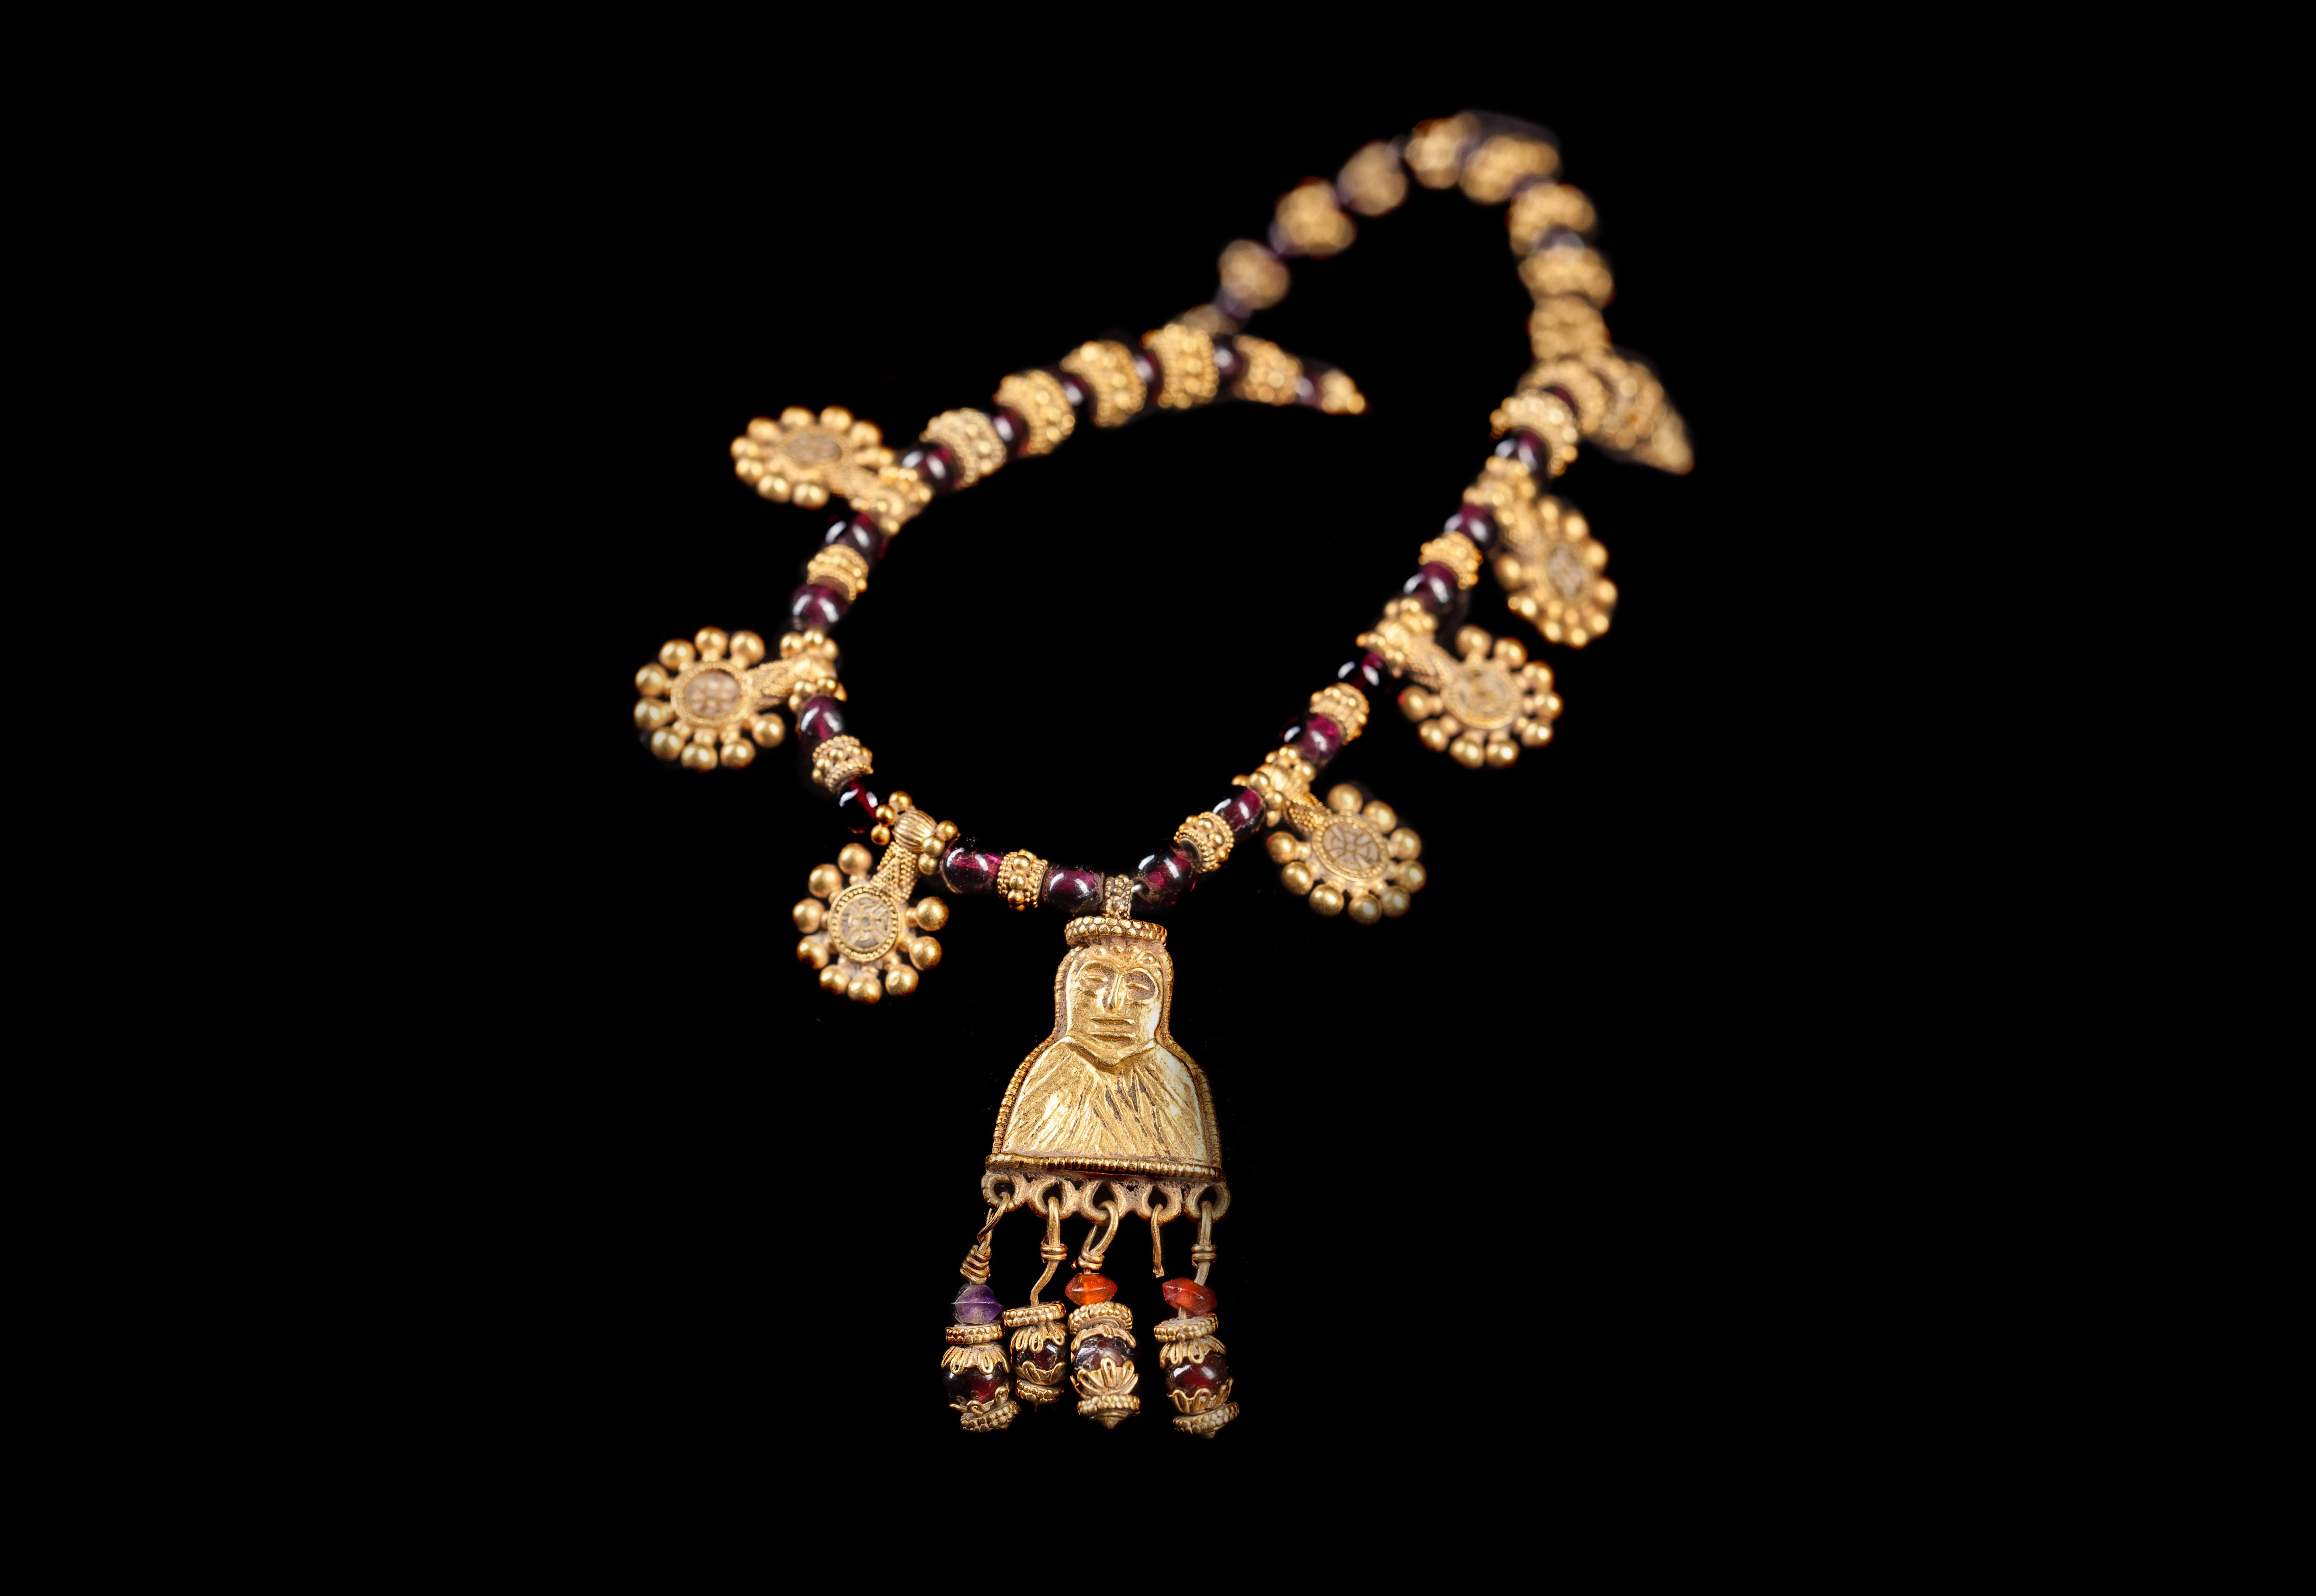 Eine Halskette aus der hellenistischen Periode, 3. bis 1. Jahrhundert v. Chr., Südarabien, möglicherweise Jemen. Dieses bemerkenswerte Collier besteht aus kugelförmigen Granatperlen, die abwechselnd mit goldenen, granulierten Zwischenperlen